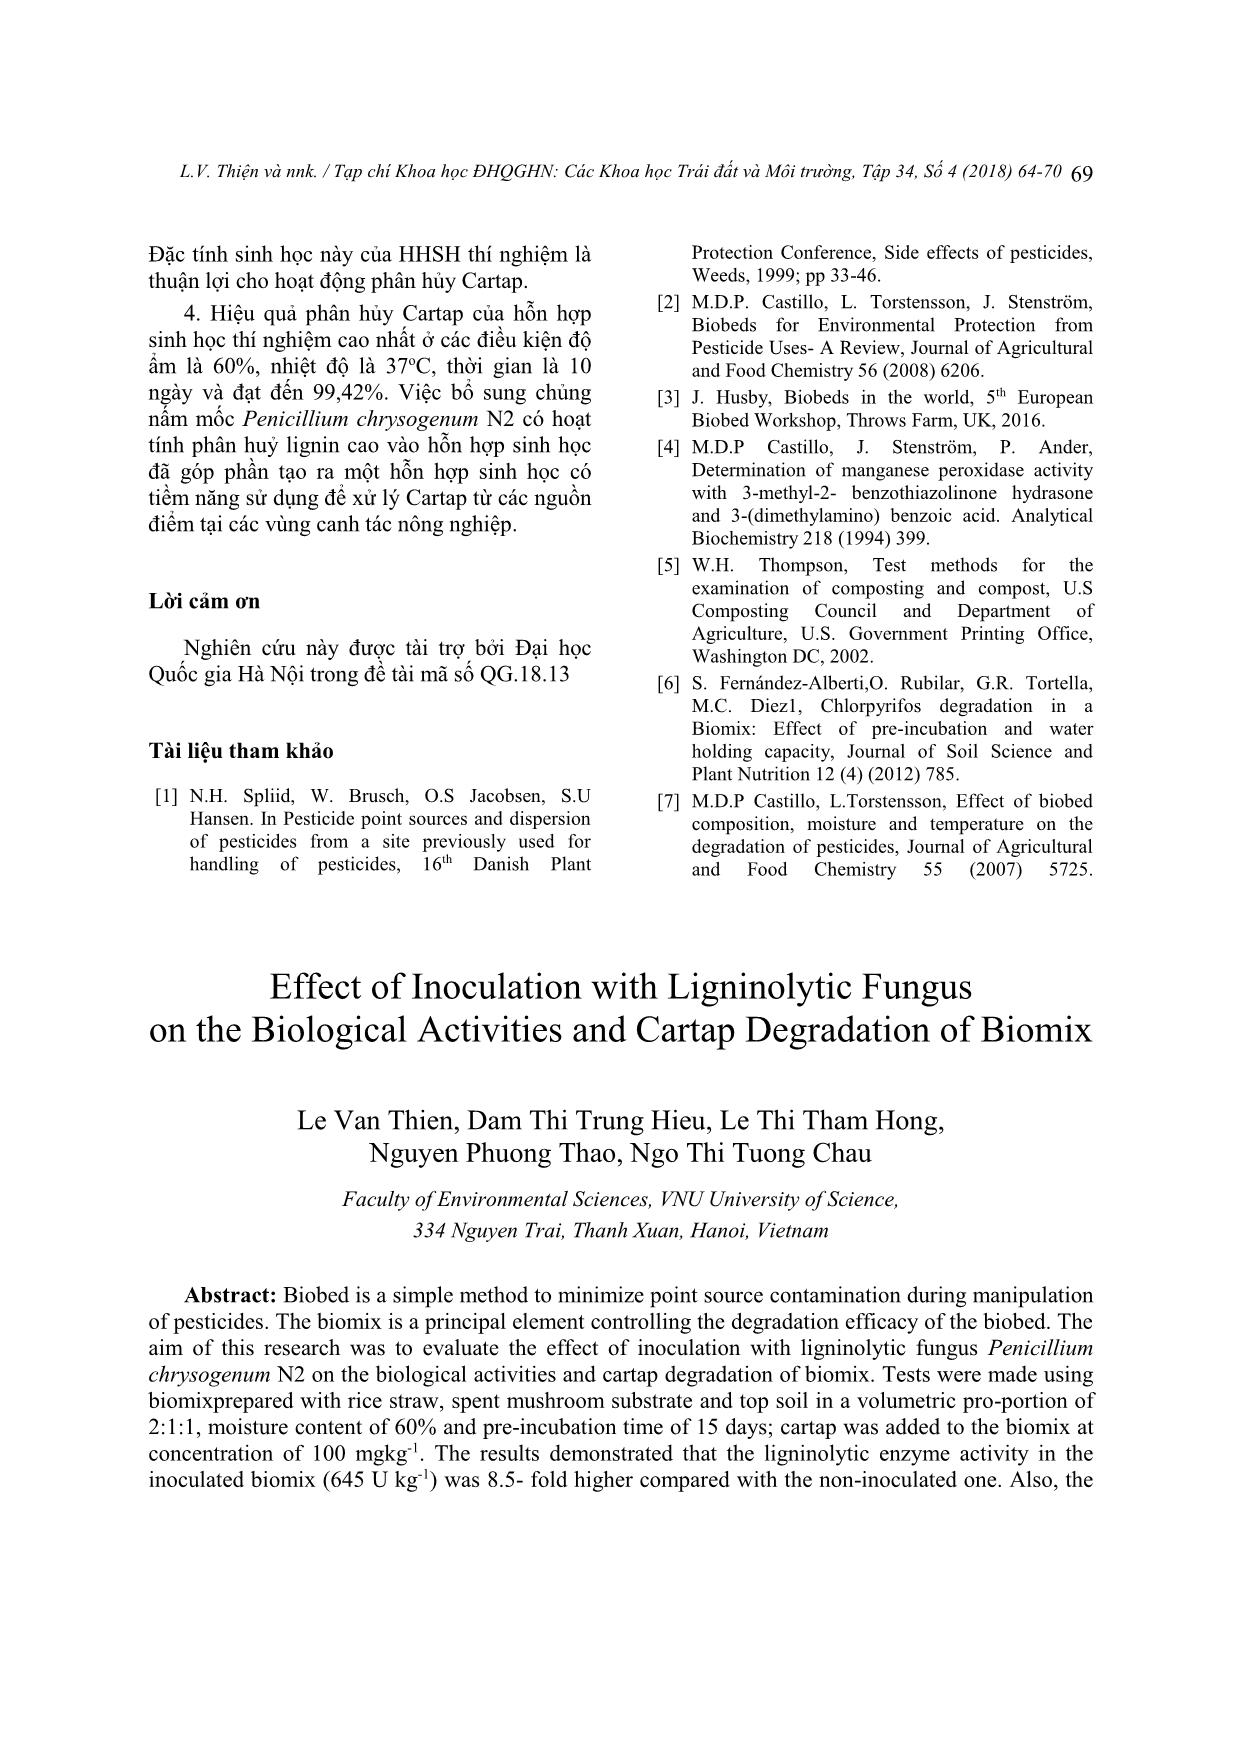 Ảnh hưởng của việc bổ sung nấm mốc phân huỷ lignin đến đặc tính và khả năng phân hủy Cartap của hỗn hợp sinh học trang 6